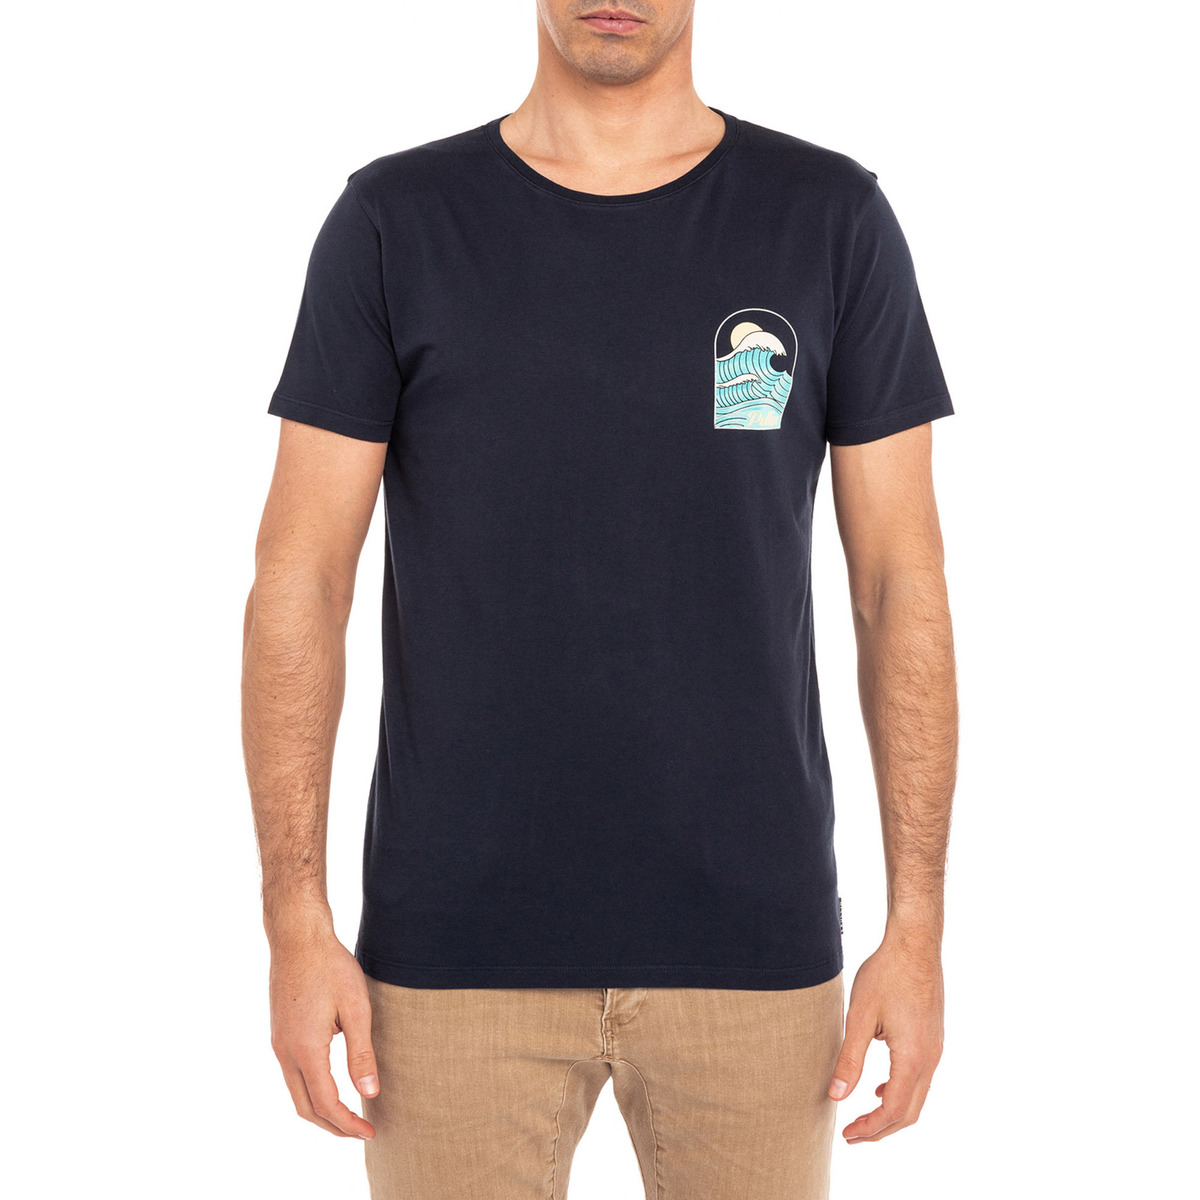 Vêtements Homme T-shirt Pour Homme T-shirt T-shirt  HAPPINESS Bleu